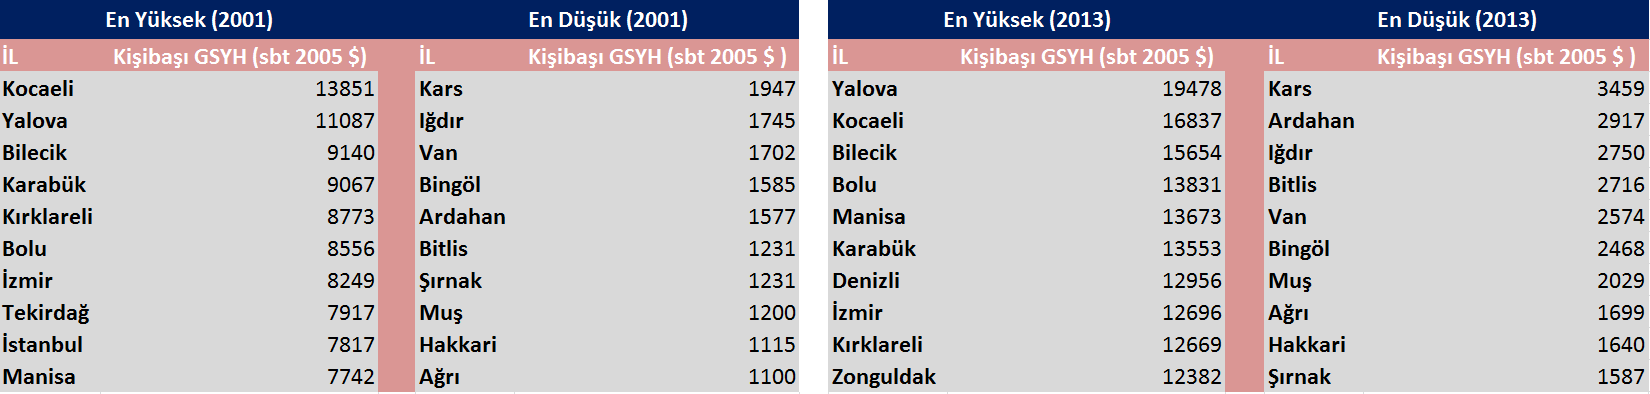 koyu mavi ile gösterilen iller, Türkiye ye nazaran ortalama olarak daha hızlı büyürken, koyu ve açık kırmızıyla gösterilen iller daha yavaş büyümüştür.